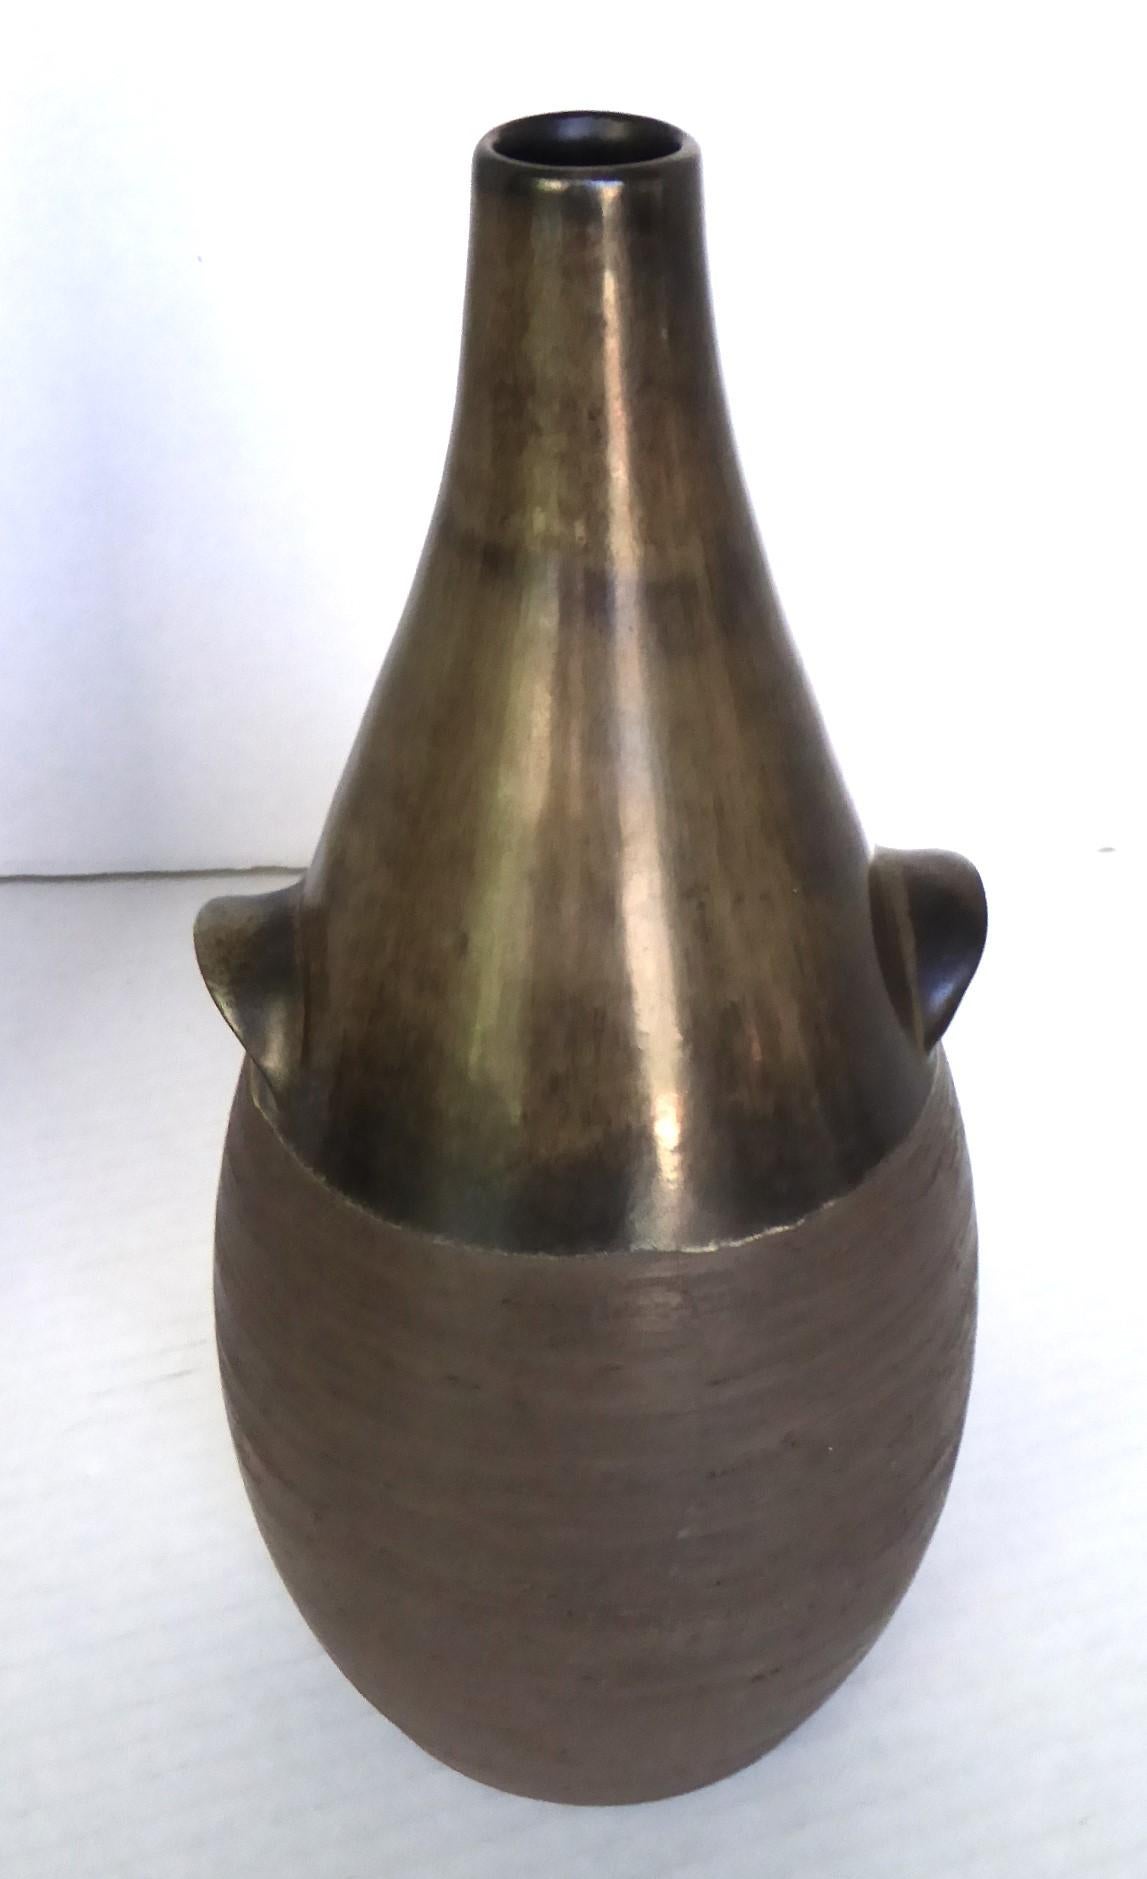 Stoneware (okoko)Scandinavian Mid Century Modern Pottery Bottle Vase from BR Denmark 1960s For Sale